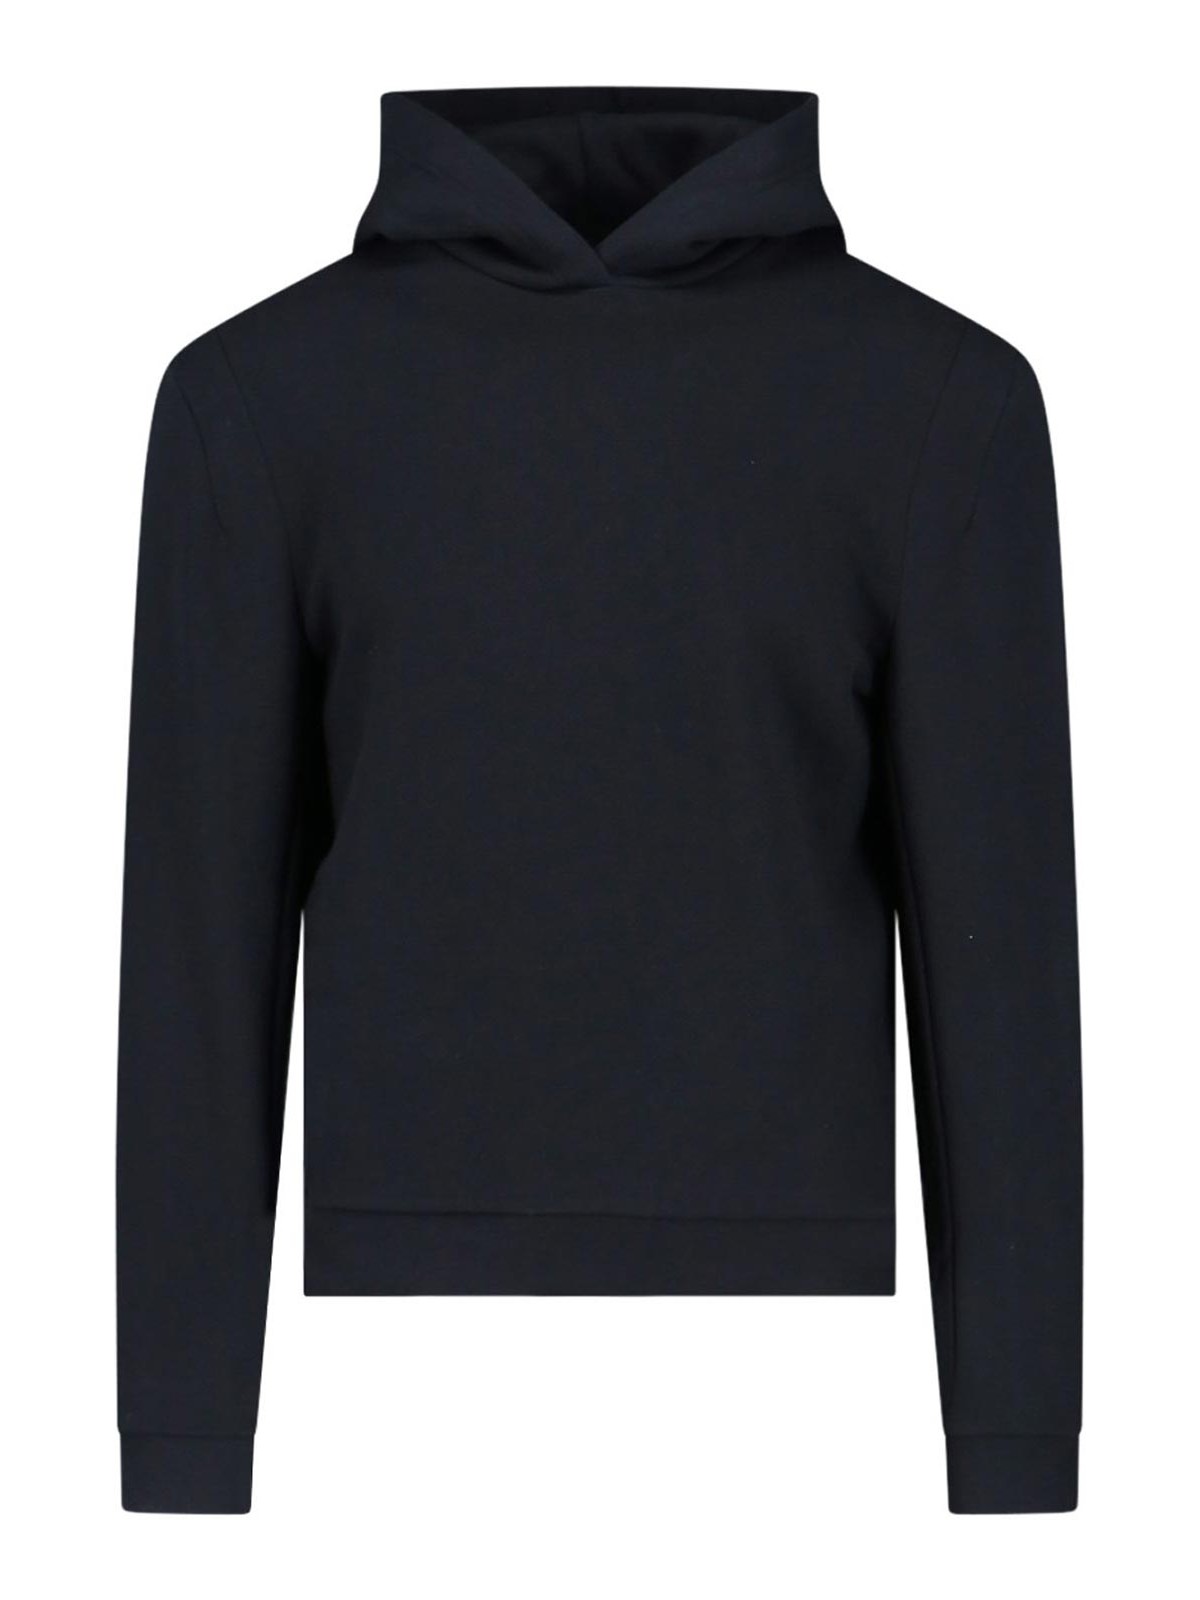 Random Identities Basic Hooded Sweatshirt In Black